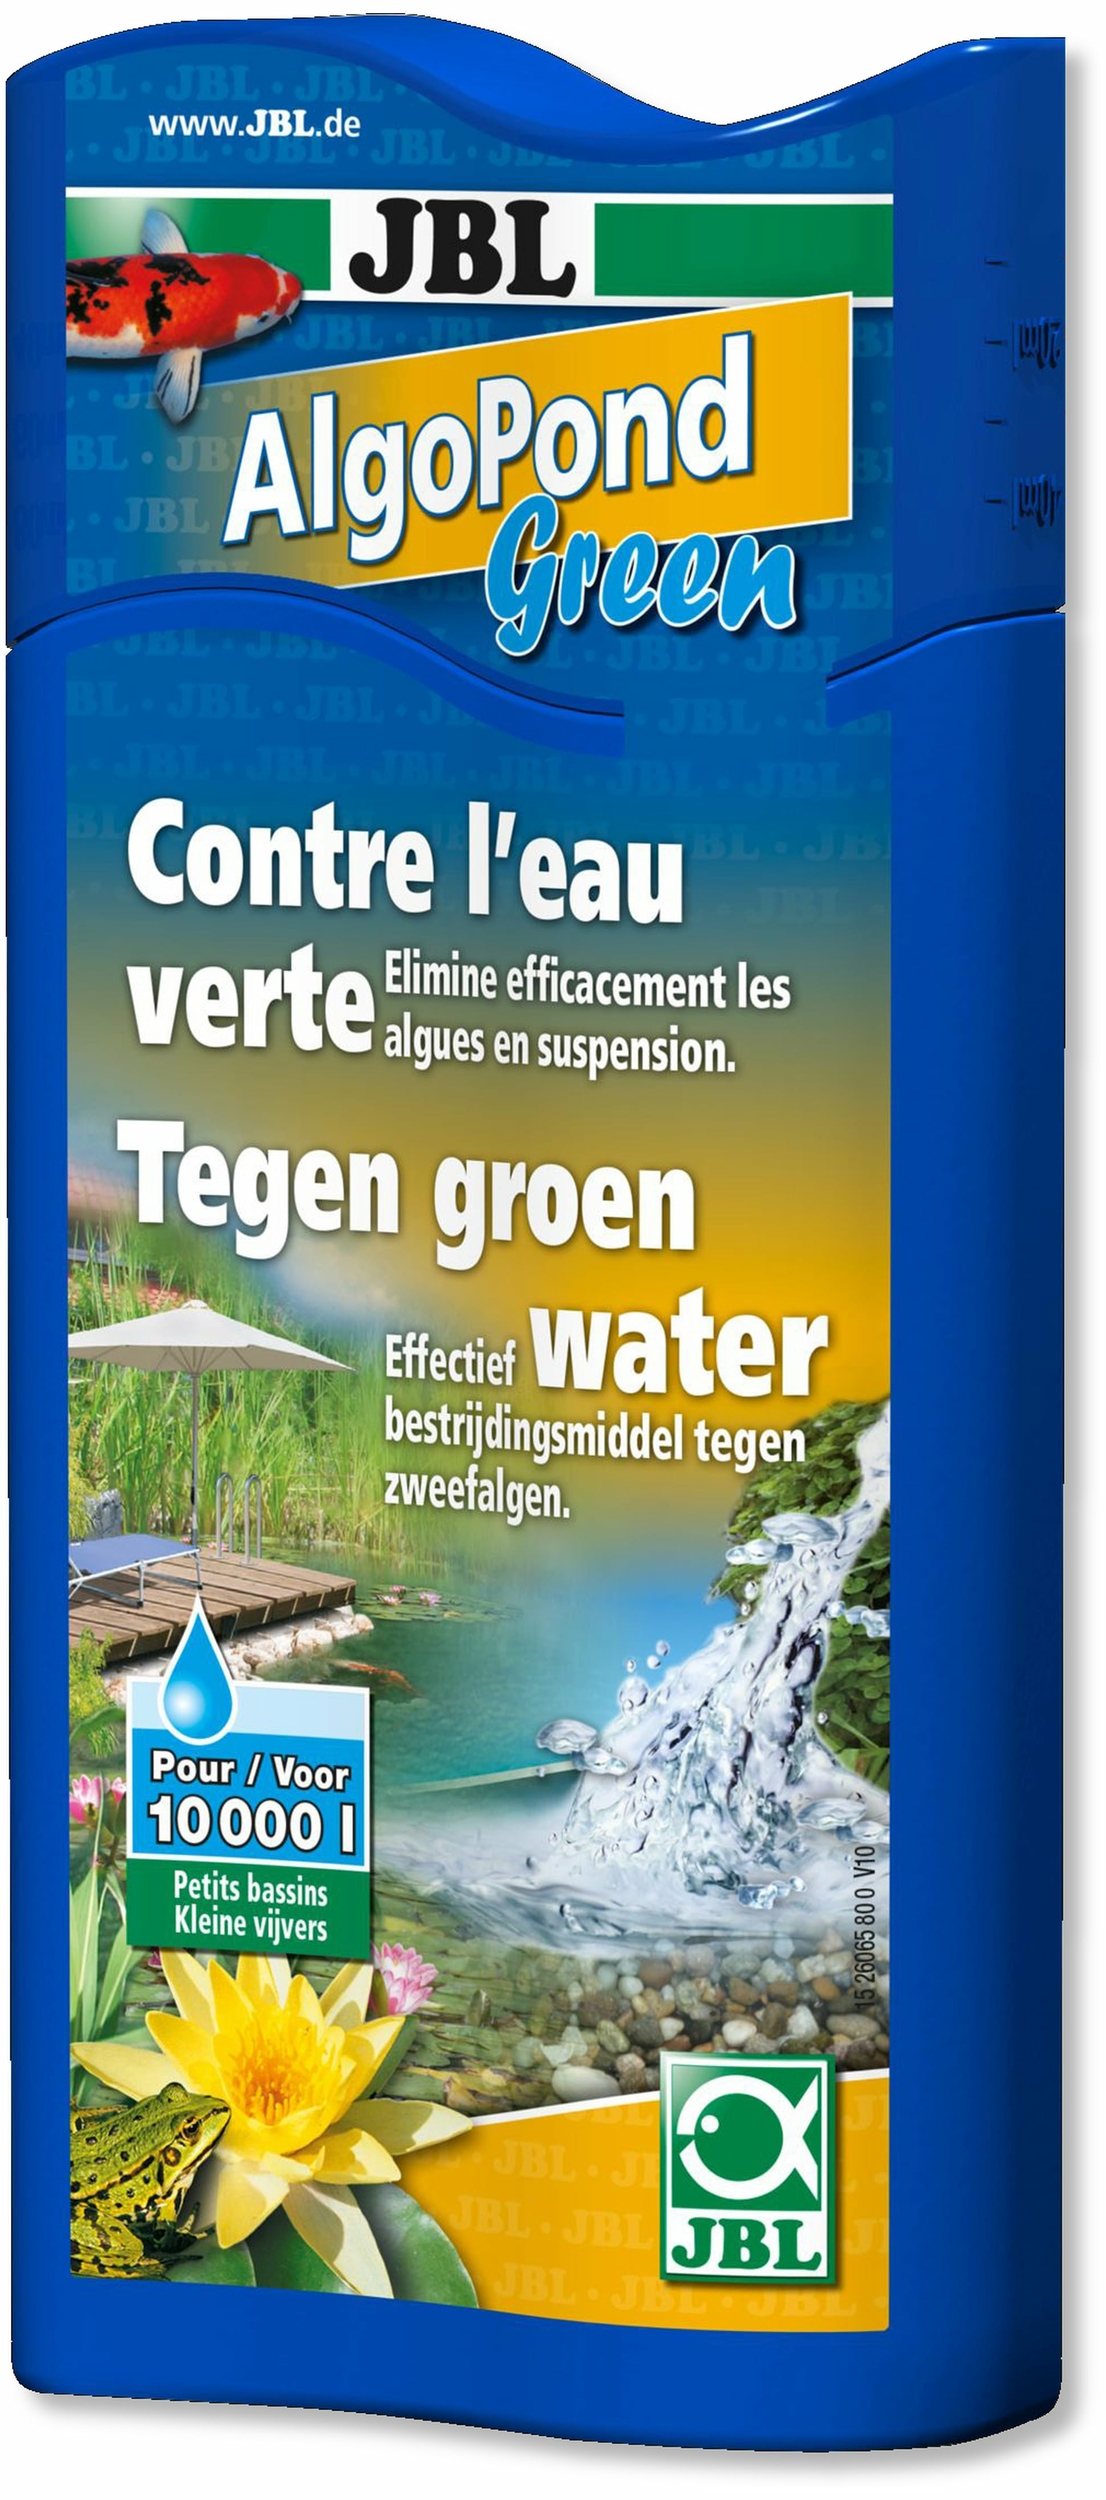 JBL AlgoPond Green 500 ml produit anti-algues contre l\'eau verte en bassin. Traite jusqu\'à 10000 L